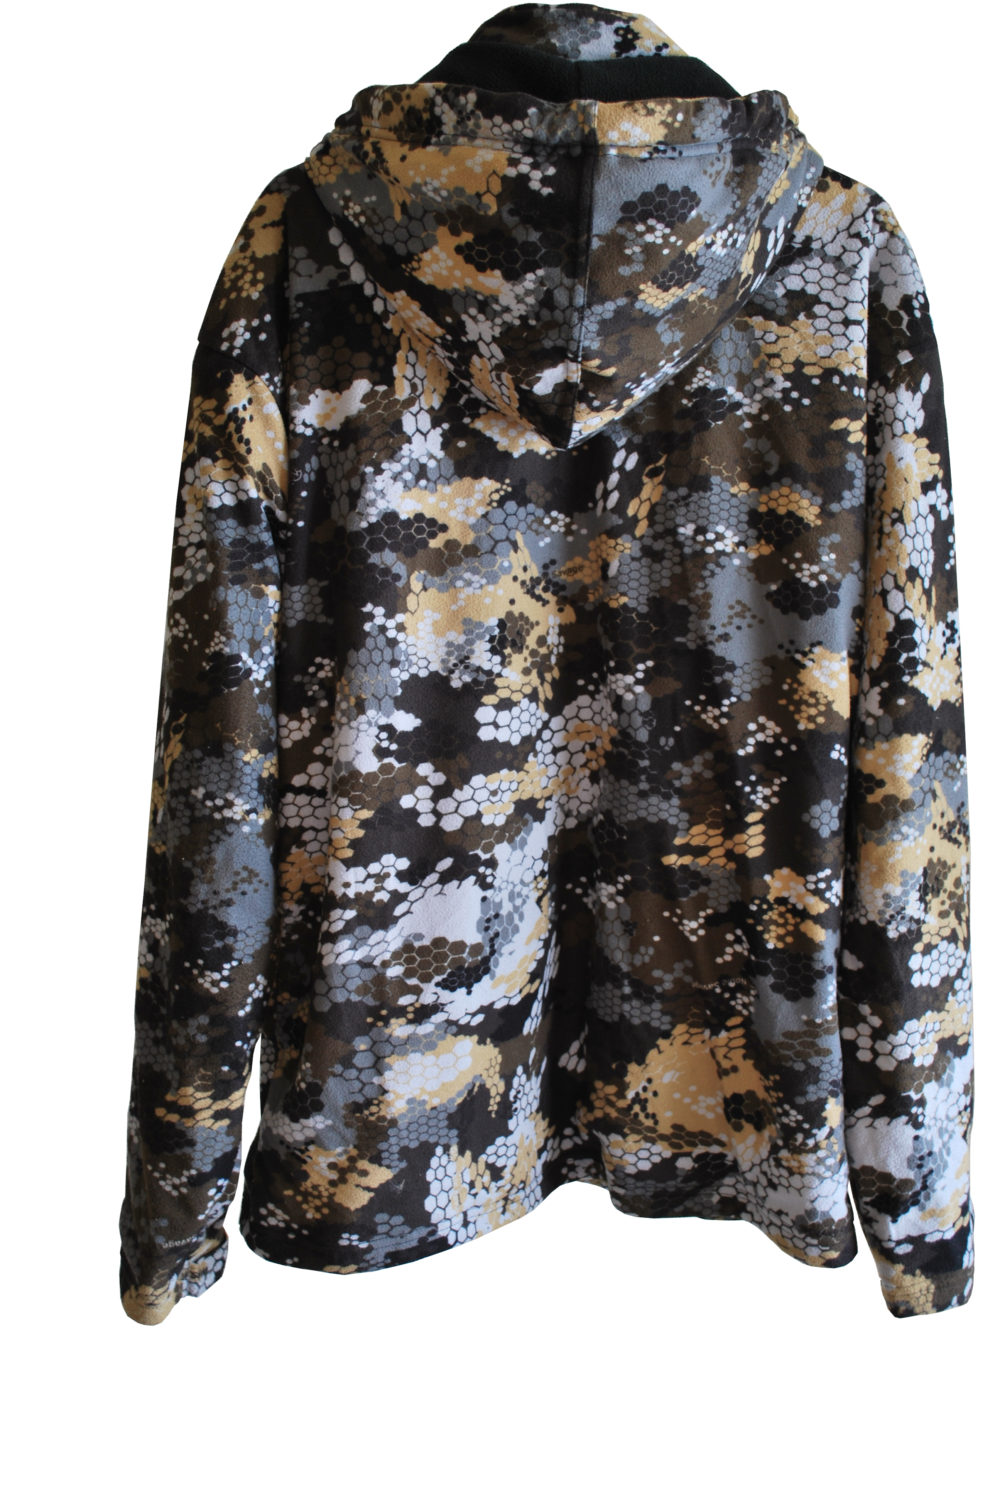 Fleece Lined Noble Savage Camo – Jacket